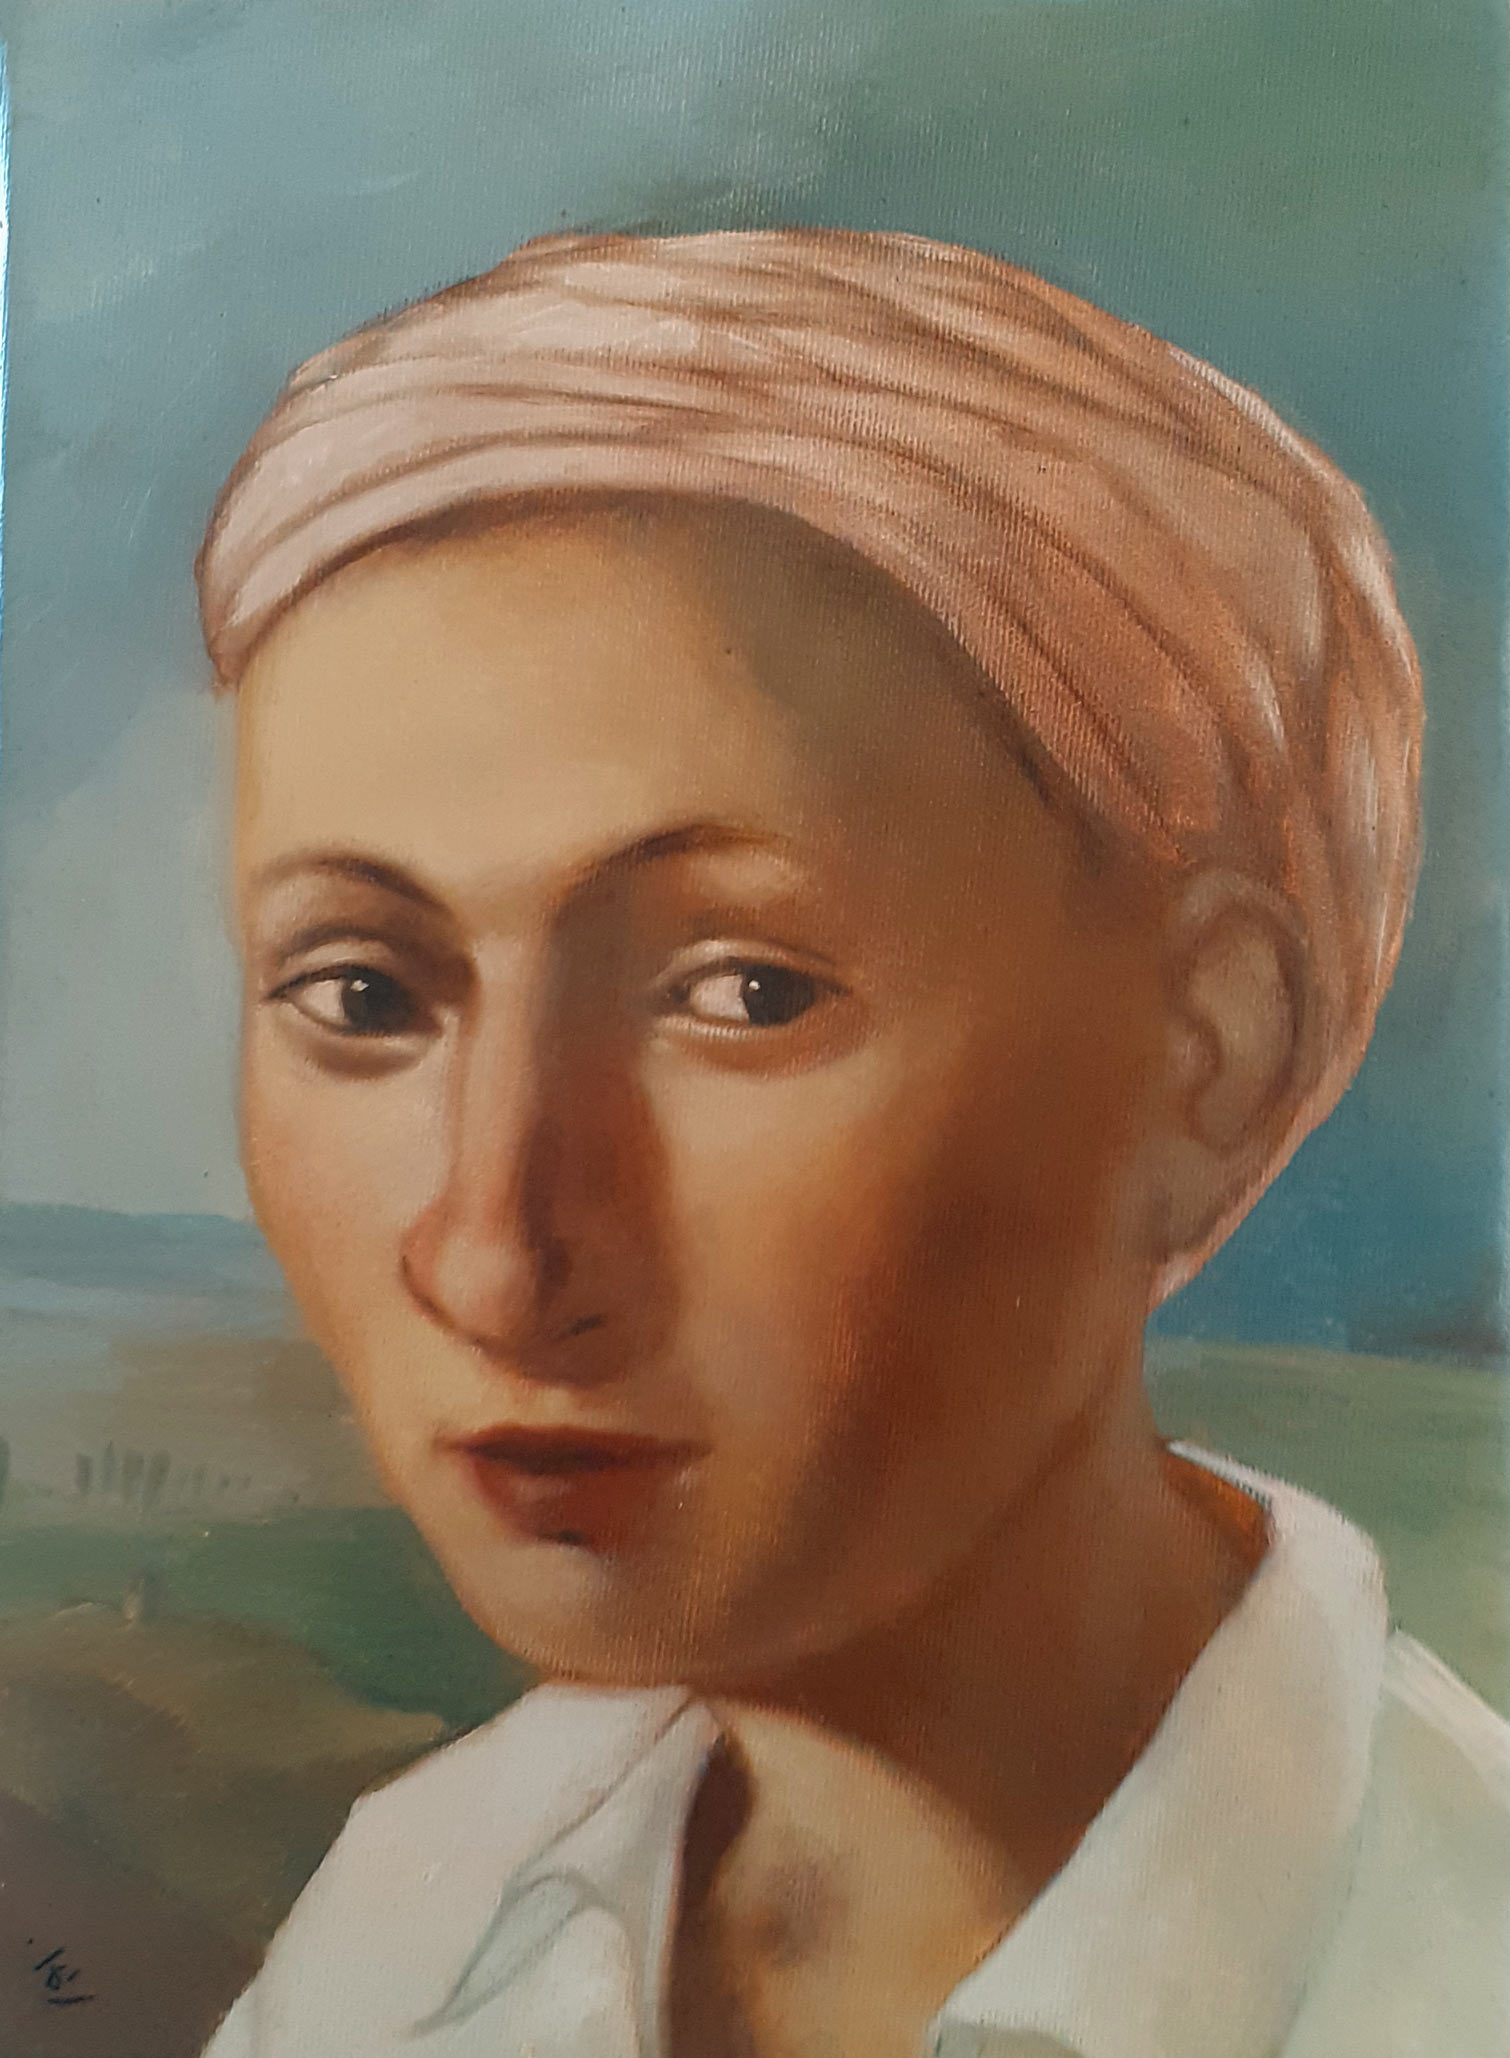 Un visage de femme, coiffée d'un turban noué.